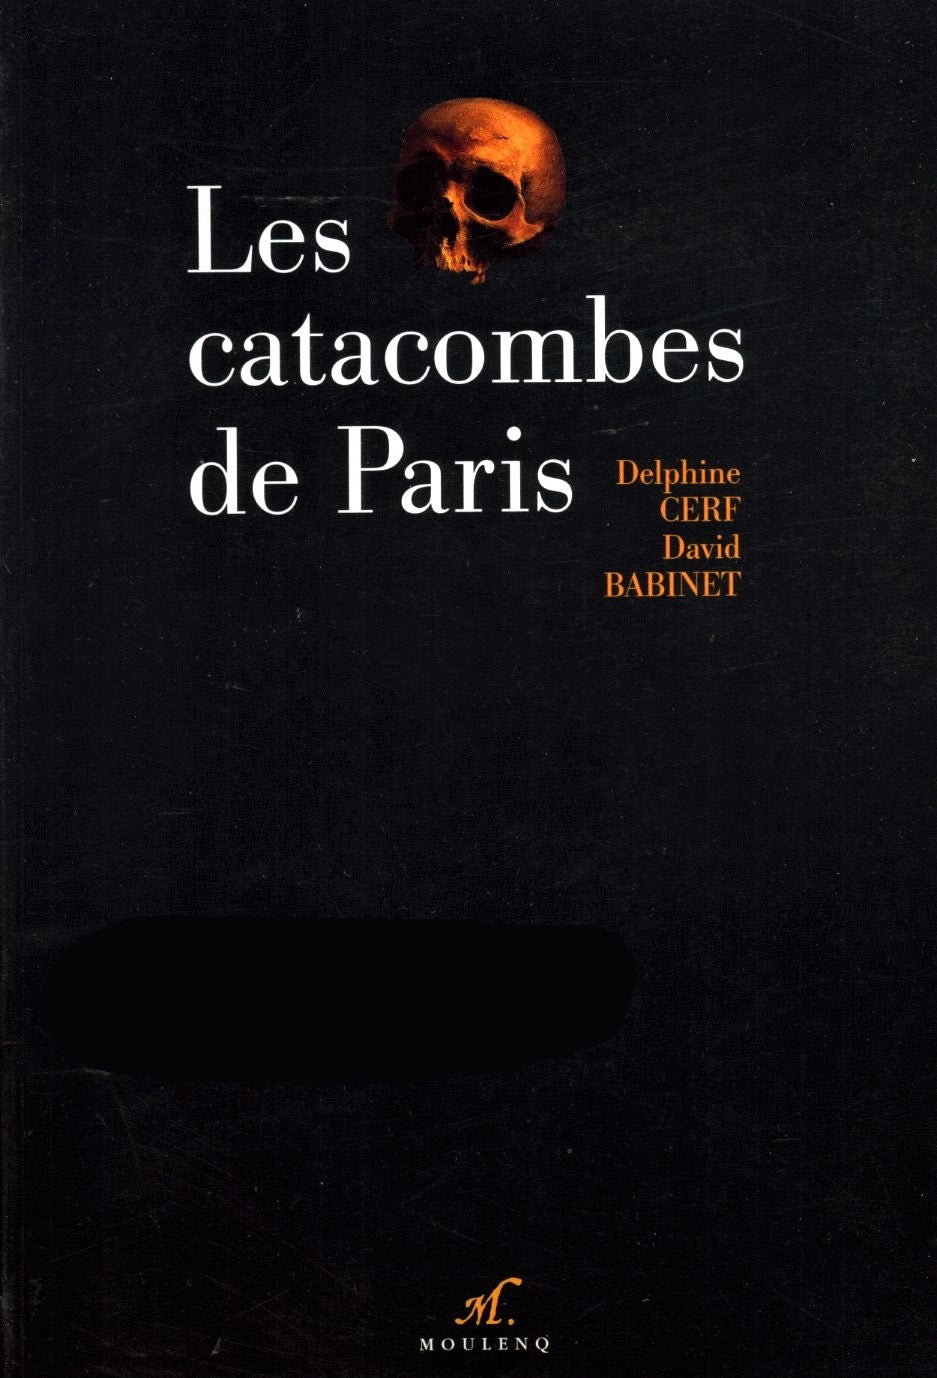 Livre ISBN 2910711005 Les catacombes de Paris (Delphine Cerf)